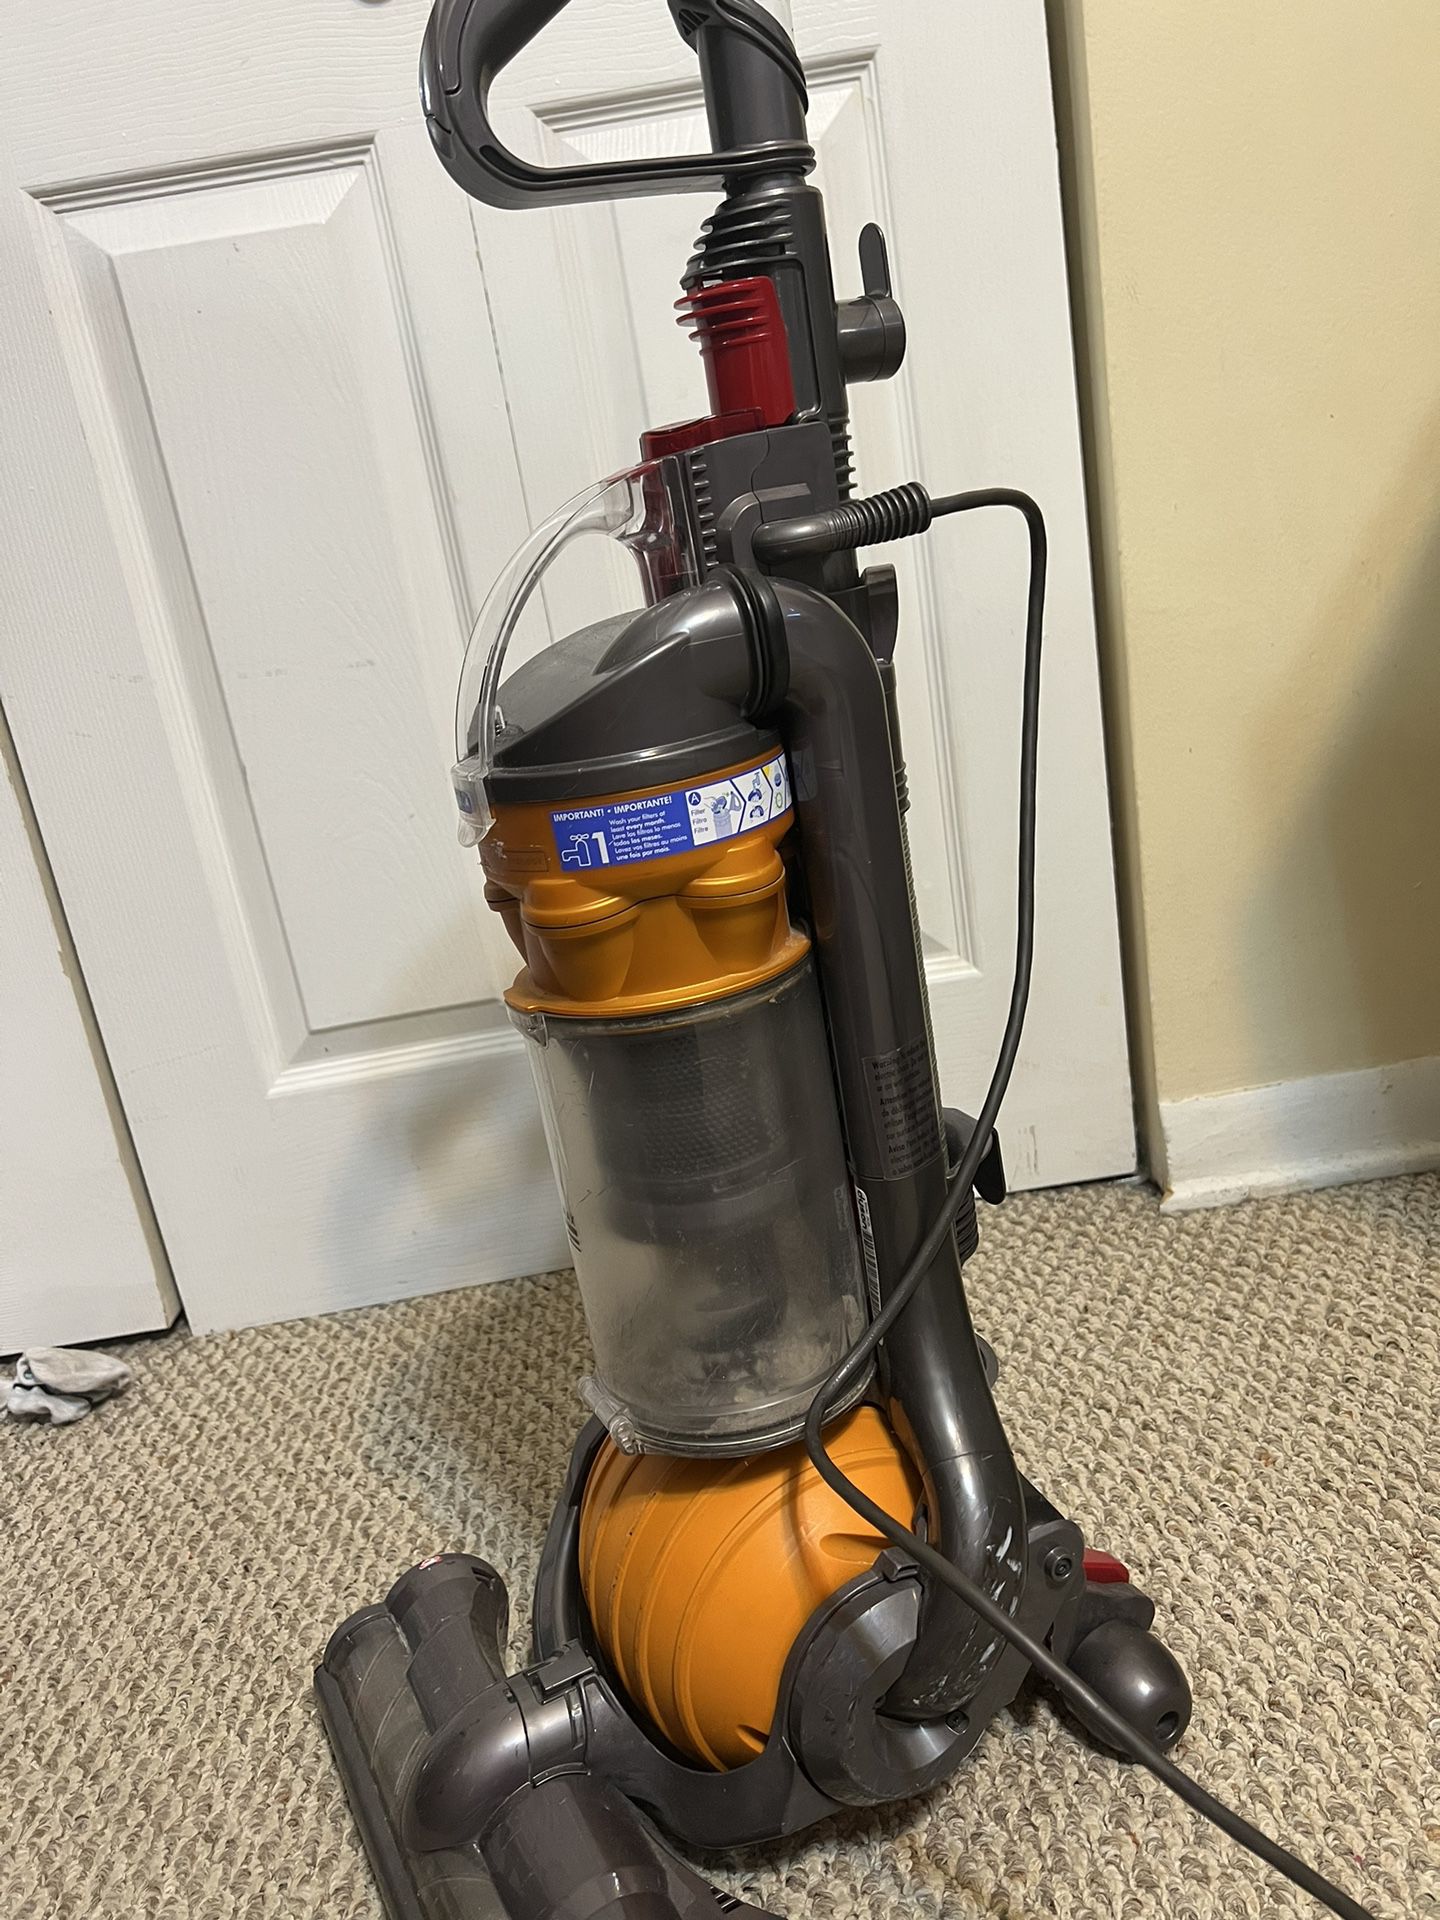 Dyson Dc 24 vacuum